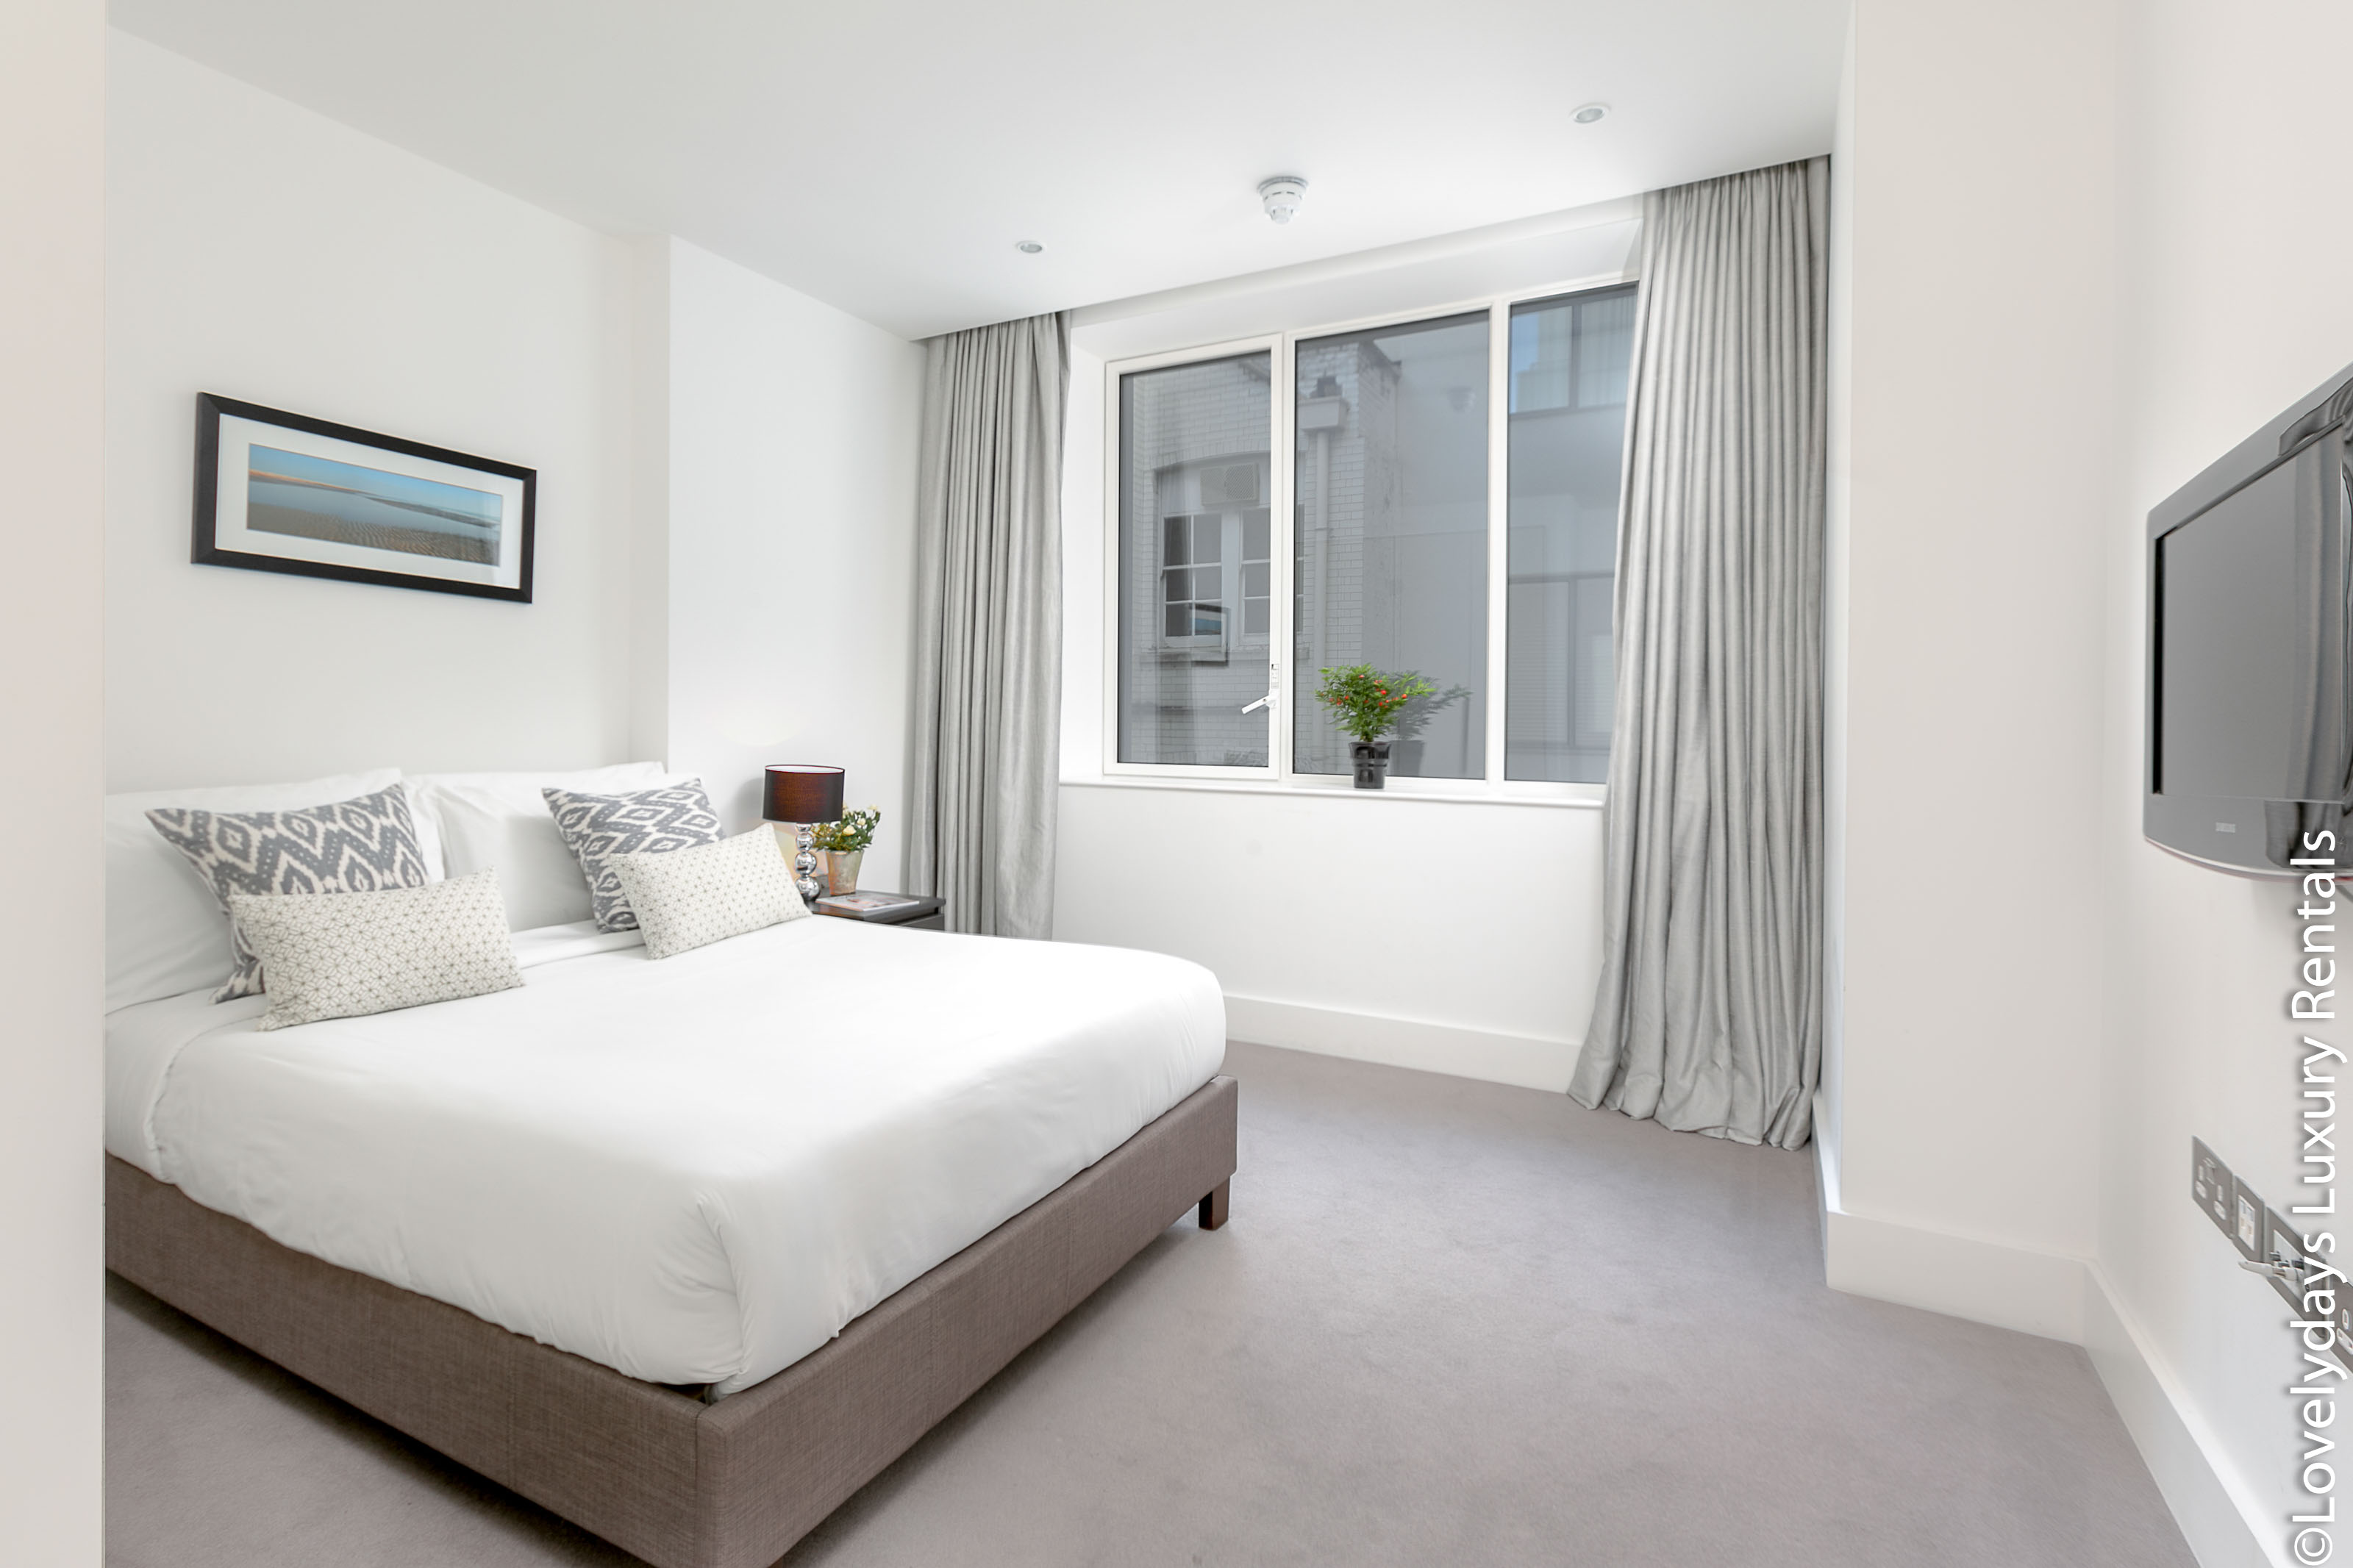 Lovelydays luxury service apartment rental - London - Covent Garden - Prince's House 606 - Lovelysuite - 2 bedrooms - 1 bathrooms - King bed - 74e170549f6c - Lovelydays